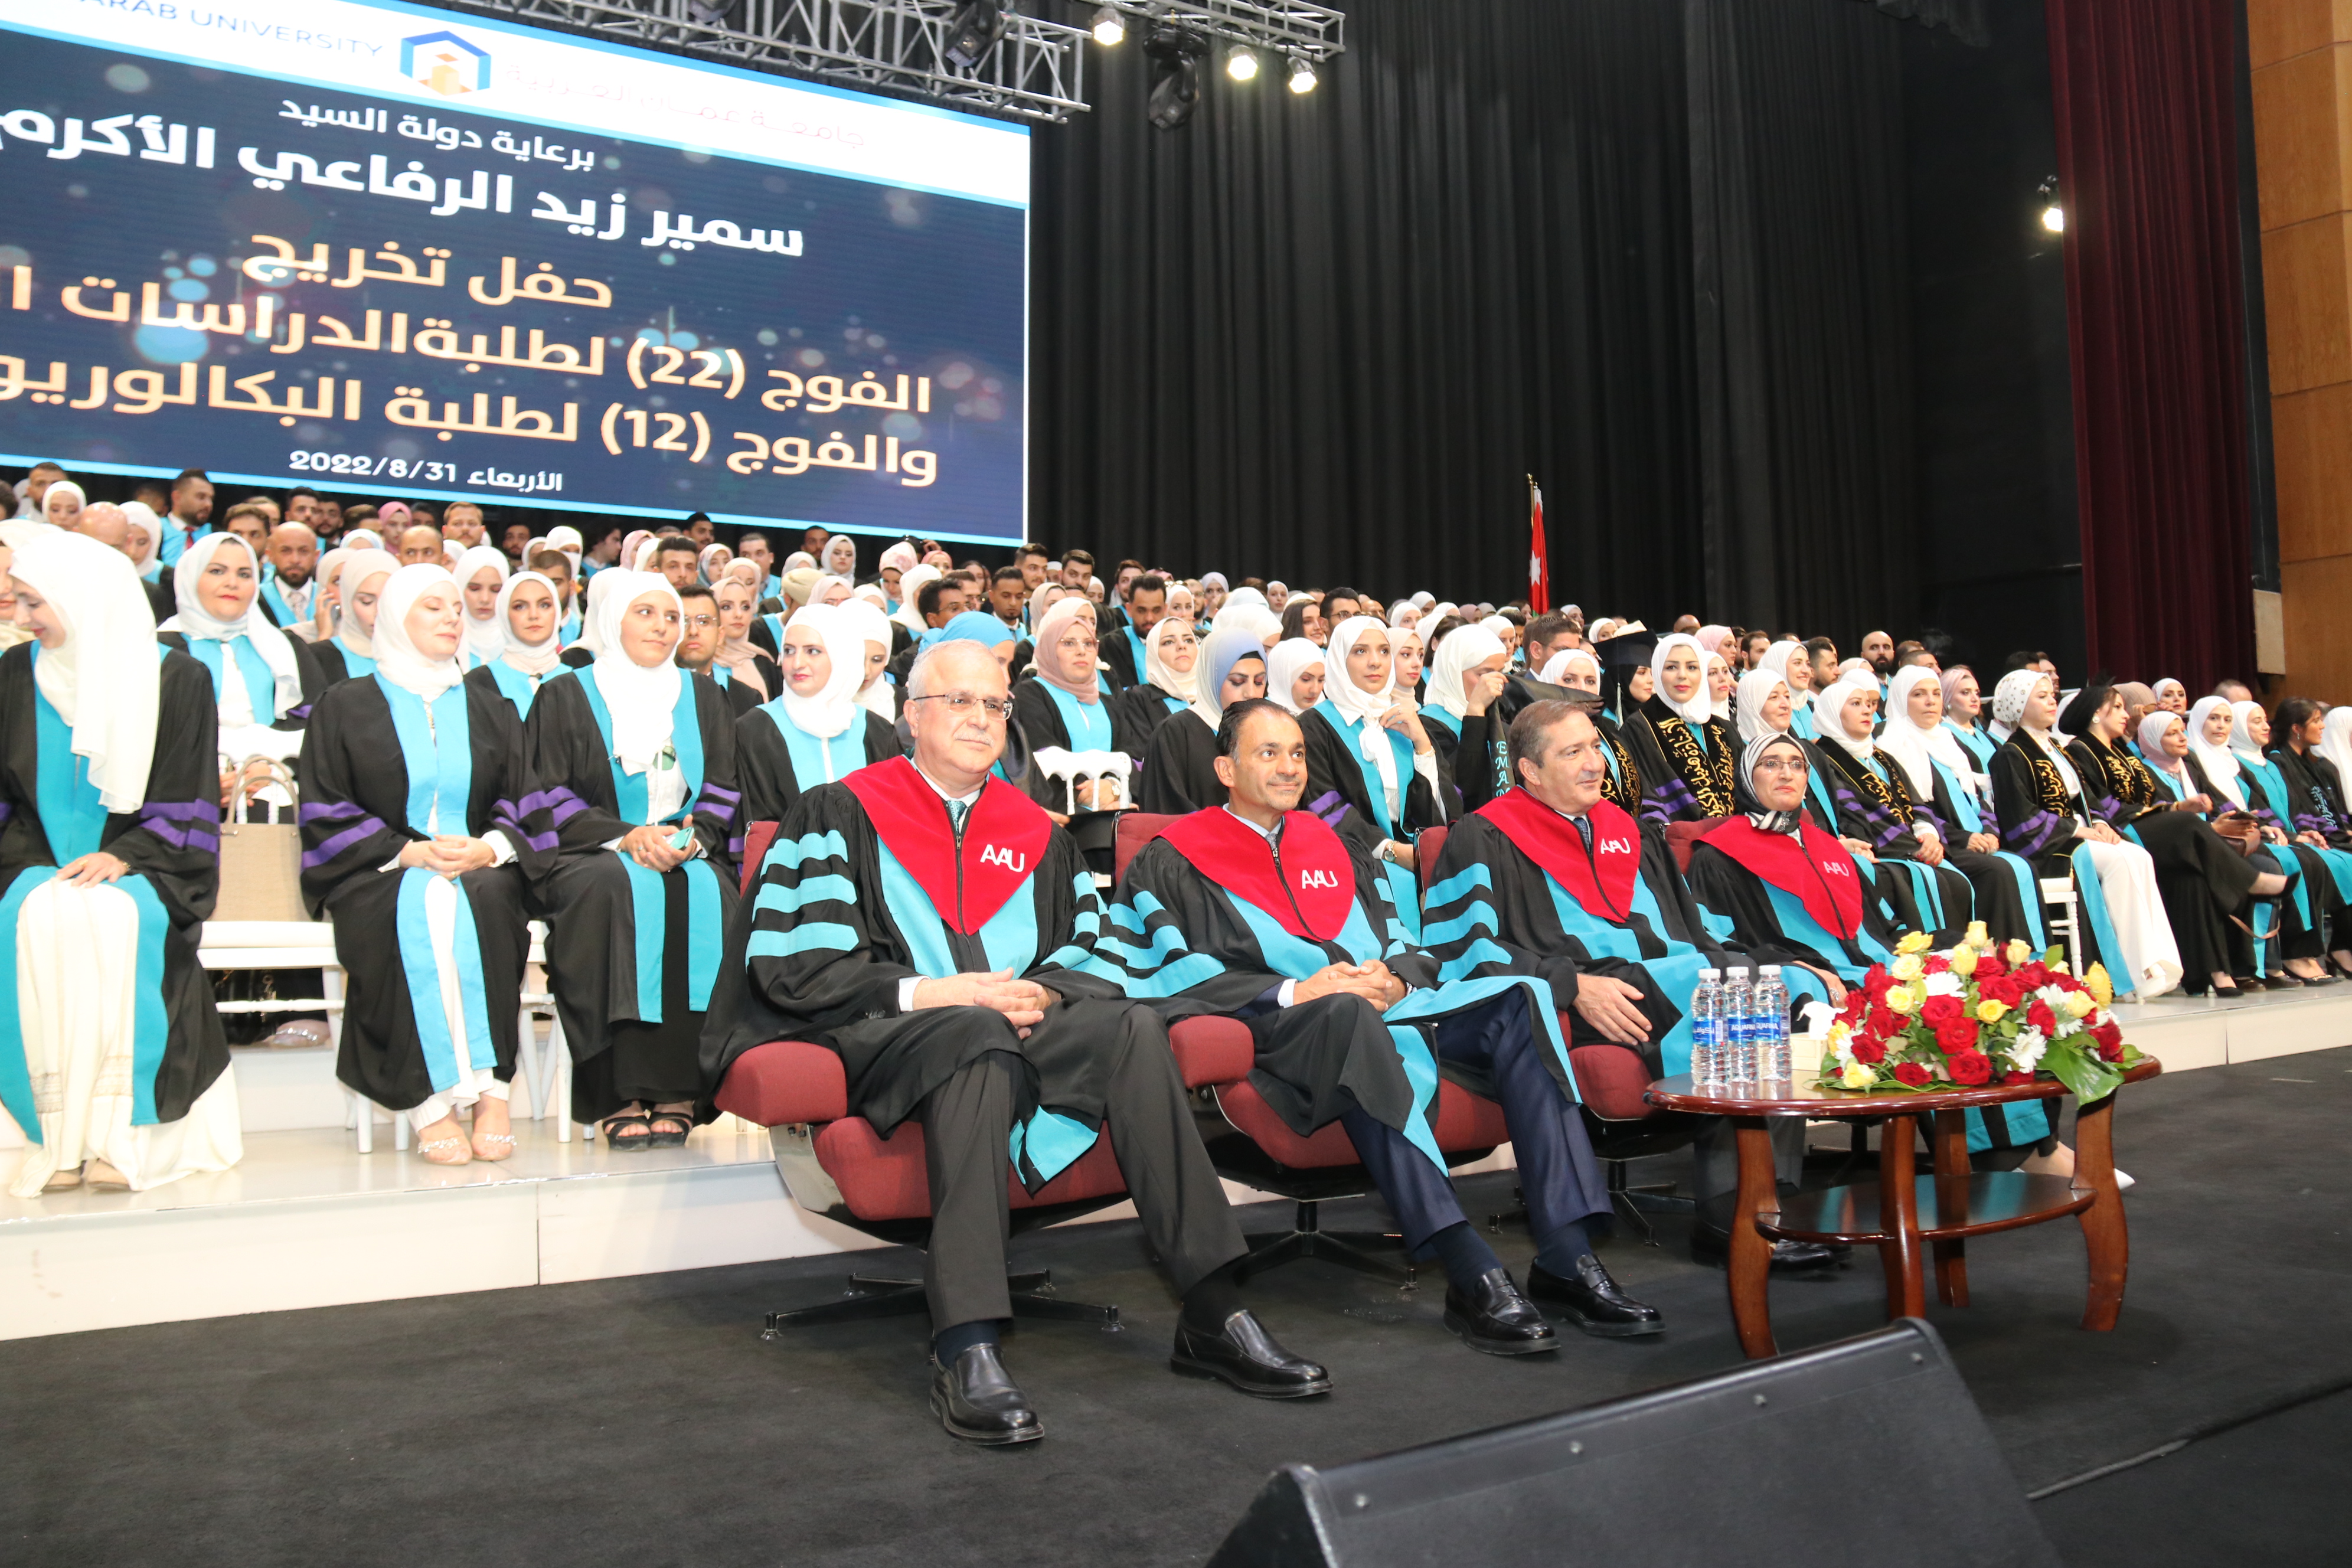 مشاهد أولية لاحتفالات جامعة عمان العربية بخريجيها للعام الدراسي 2021-202216